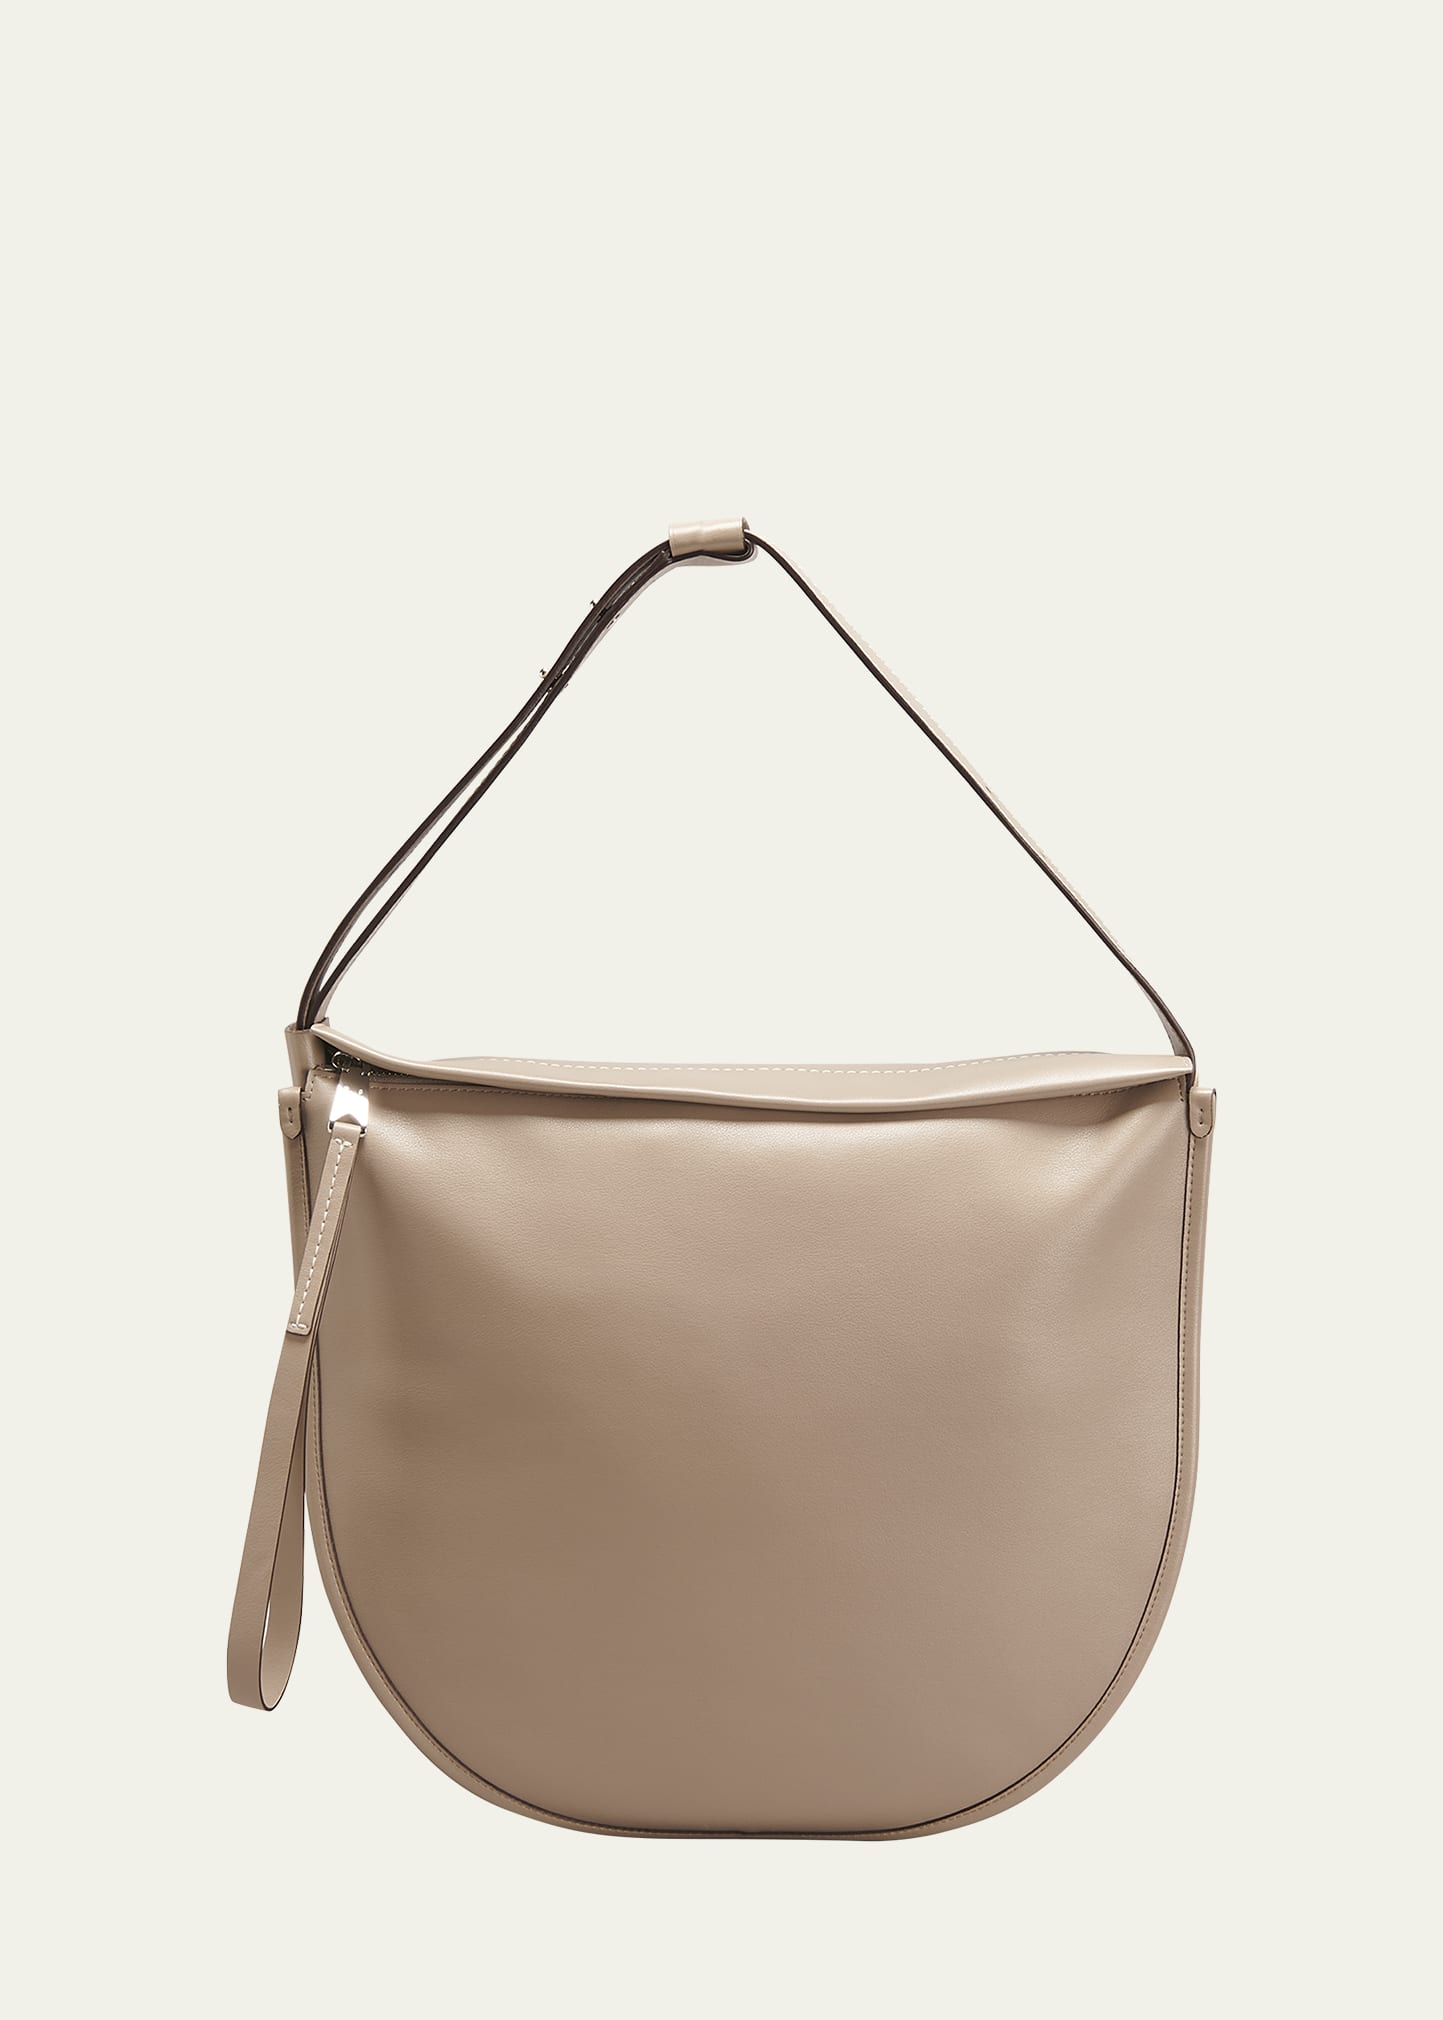 Proenza Schouler White Label Baxter Leather Shoulder Bag